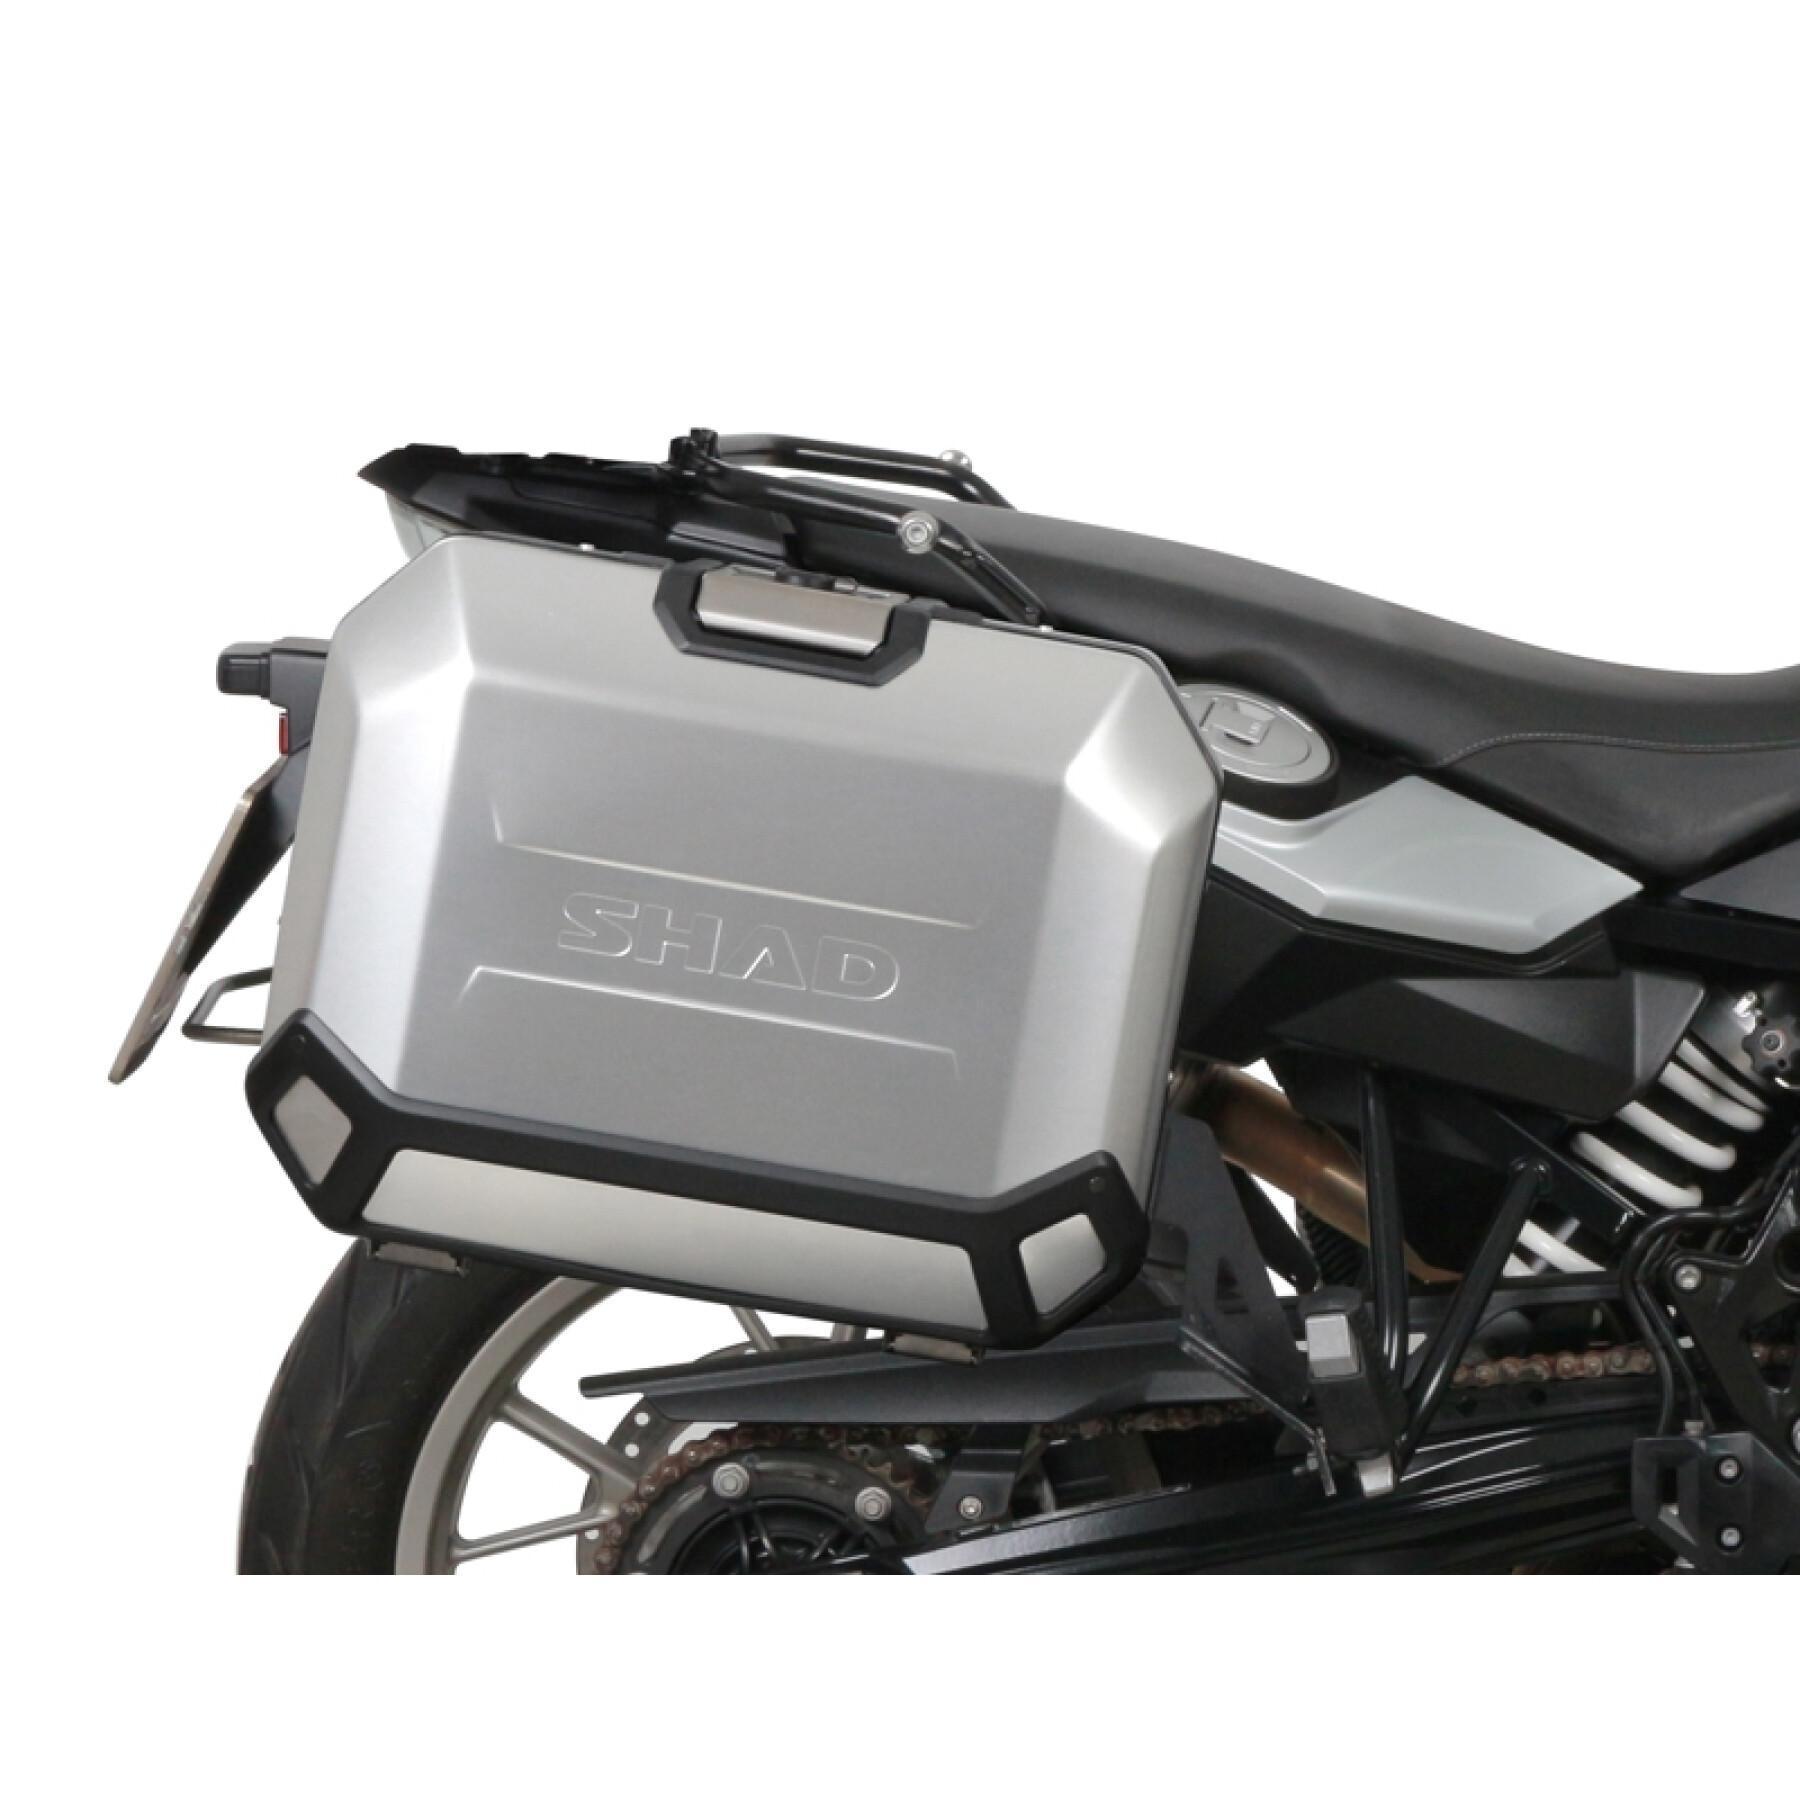 Podpora boczna motocykla Shad 4P System Bmw F650Gs/F700Gs/F800Gs 2009-2018